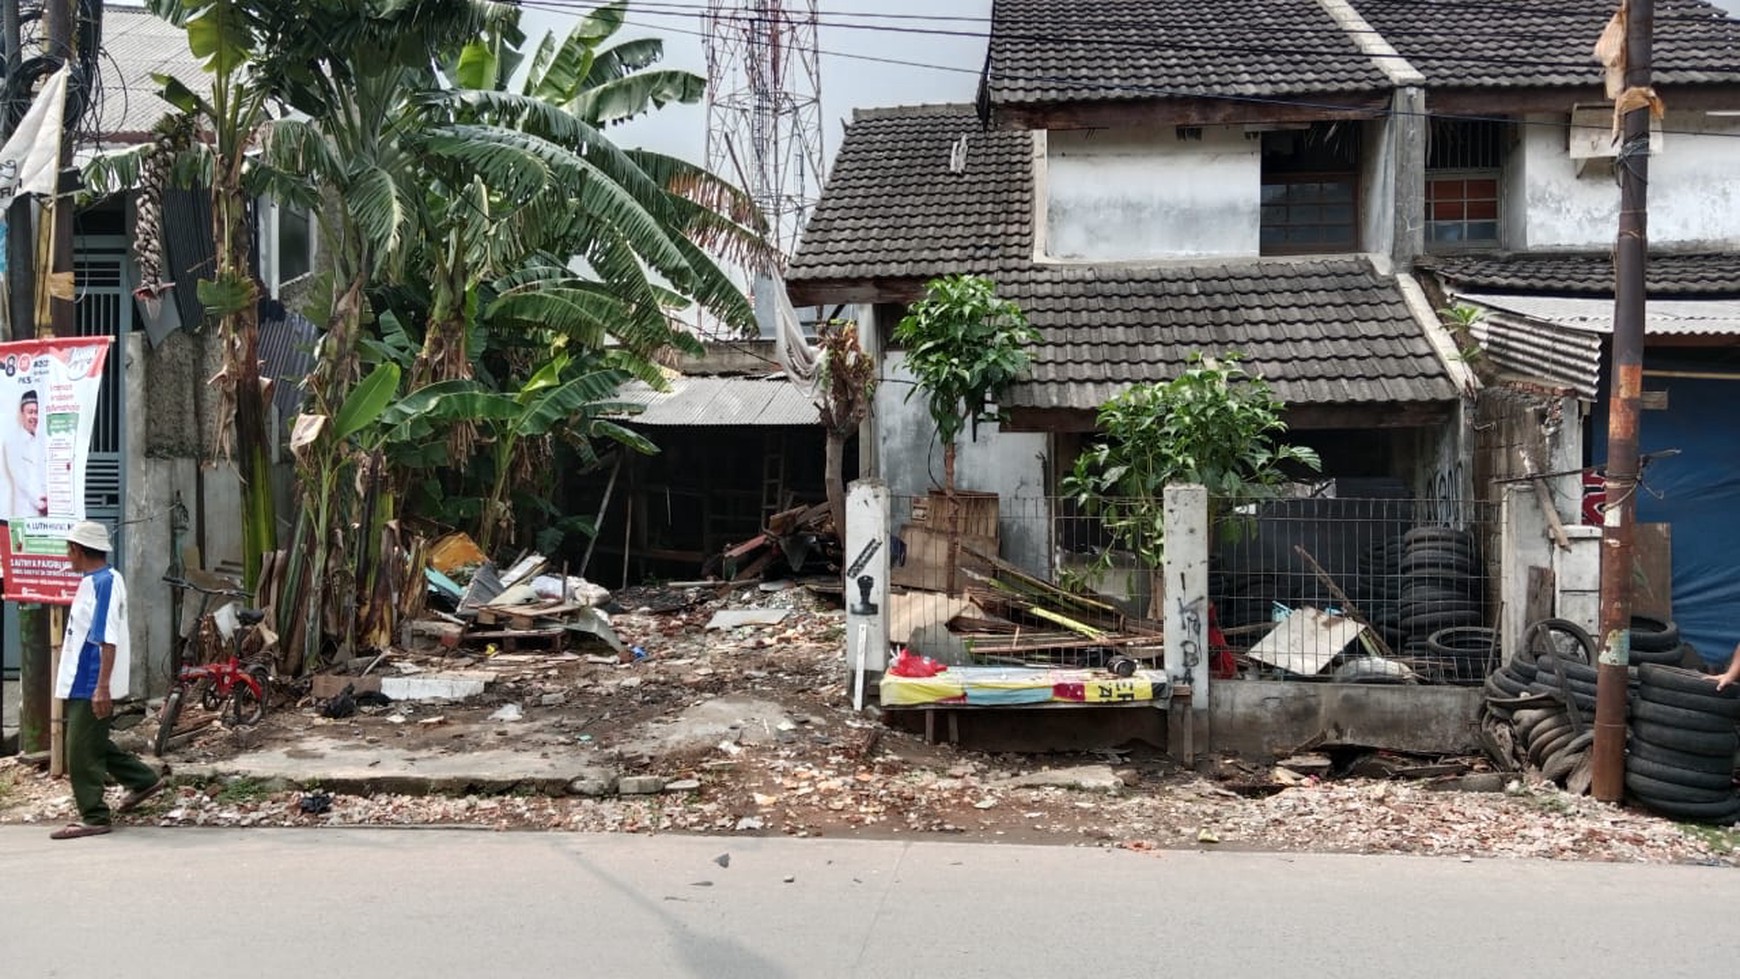 Dijual rumah perlu renovasi di Jl. Prabu Siliwangi, Perumnas 4 Karawaci - Tangerang